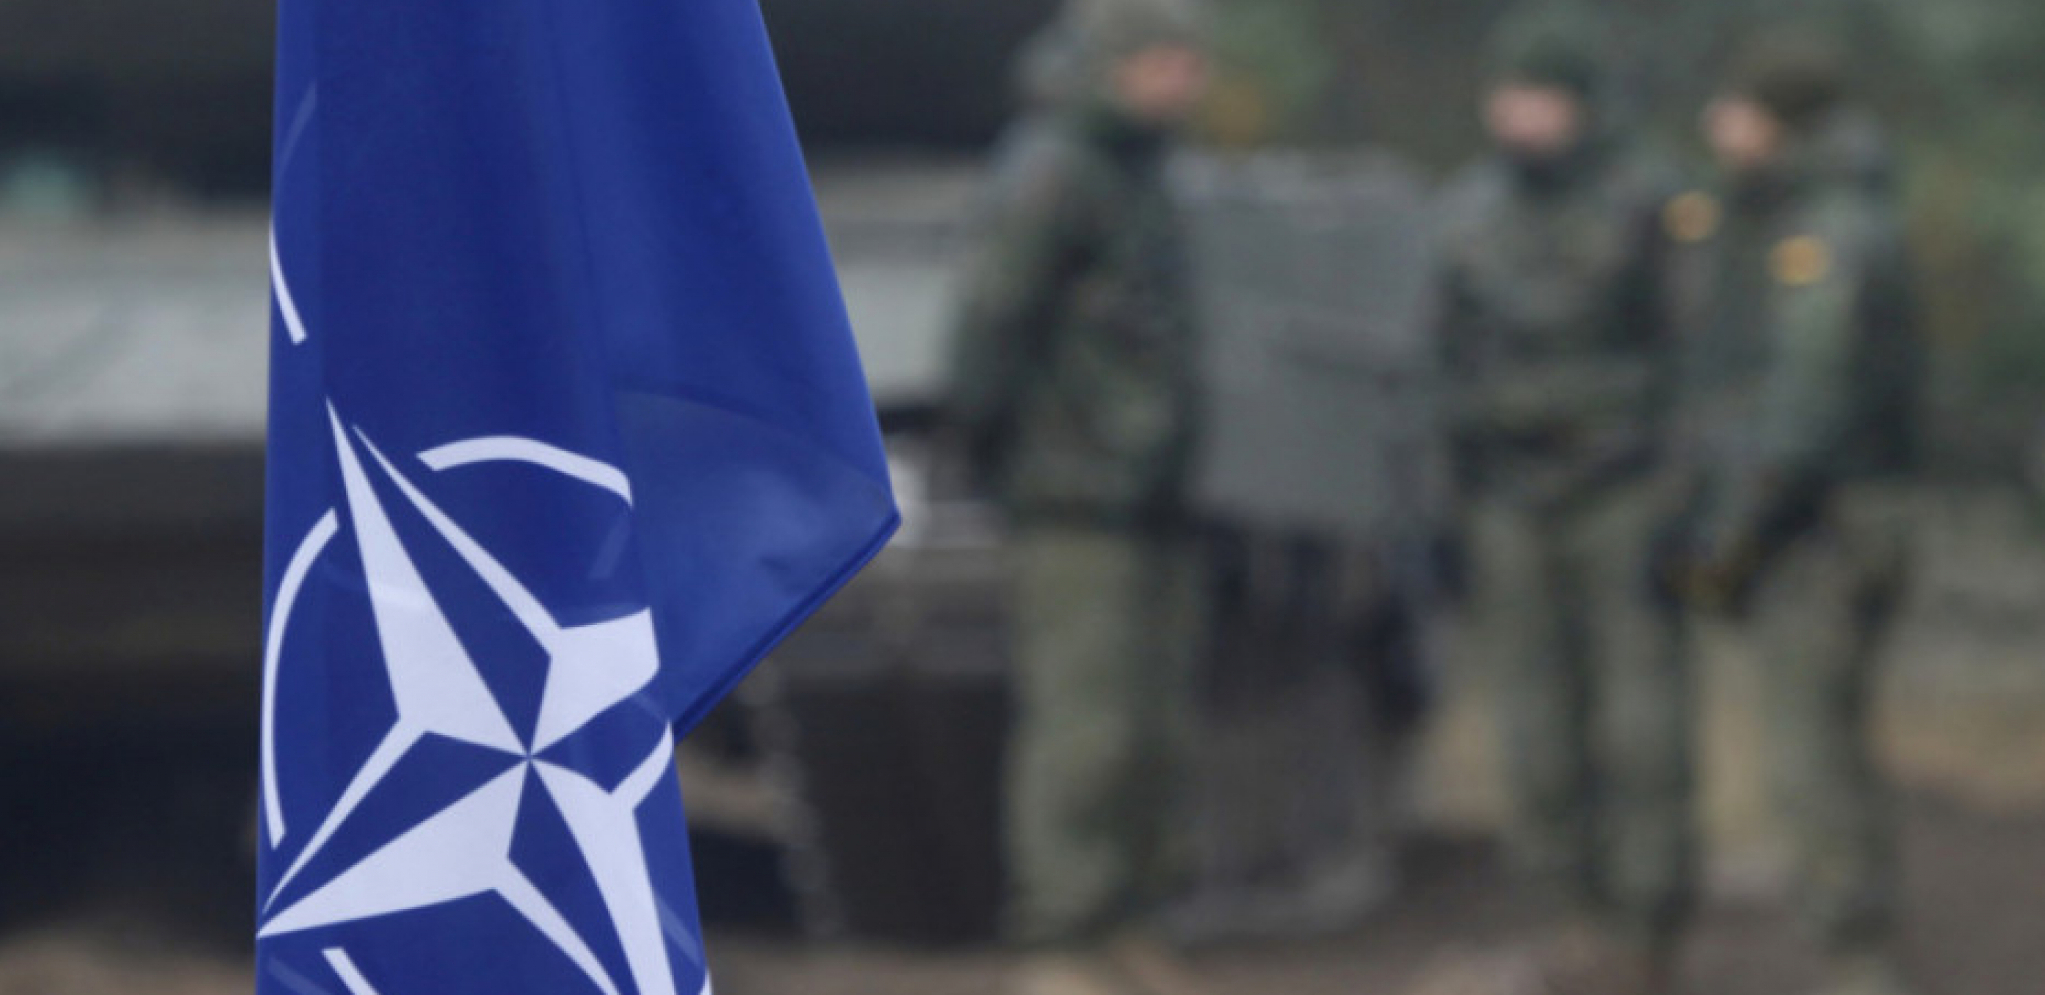 MUK U NATO PAKTU Ankara se sjajno zabavlja - novi uslov za Finsku